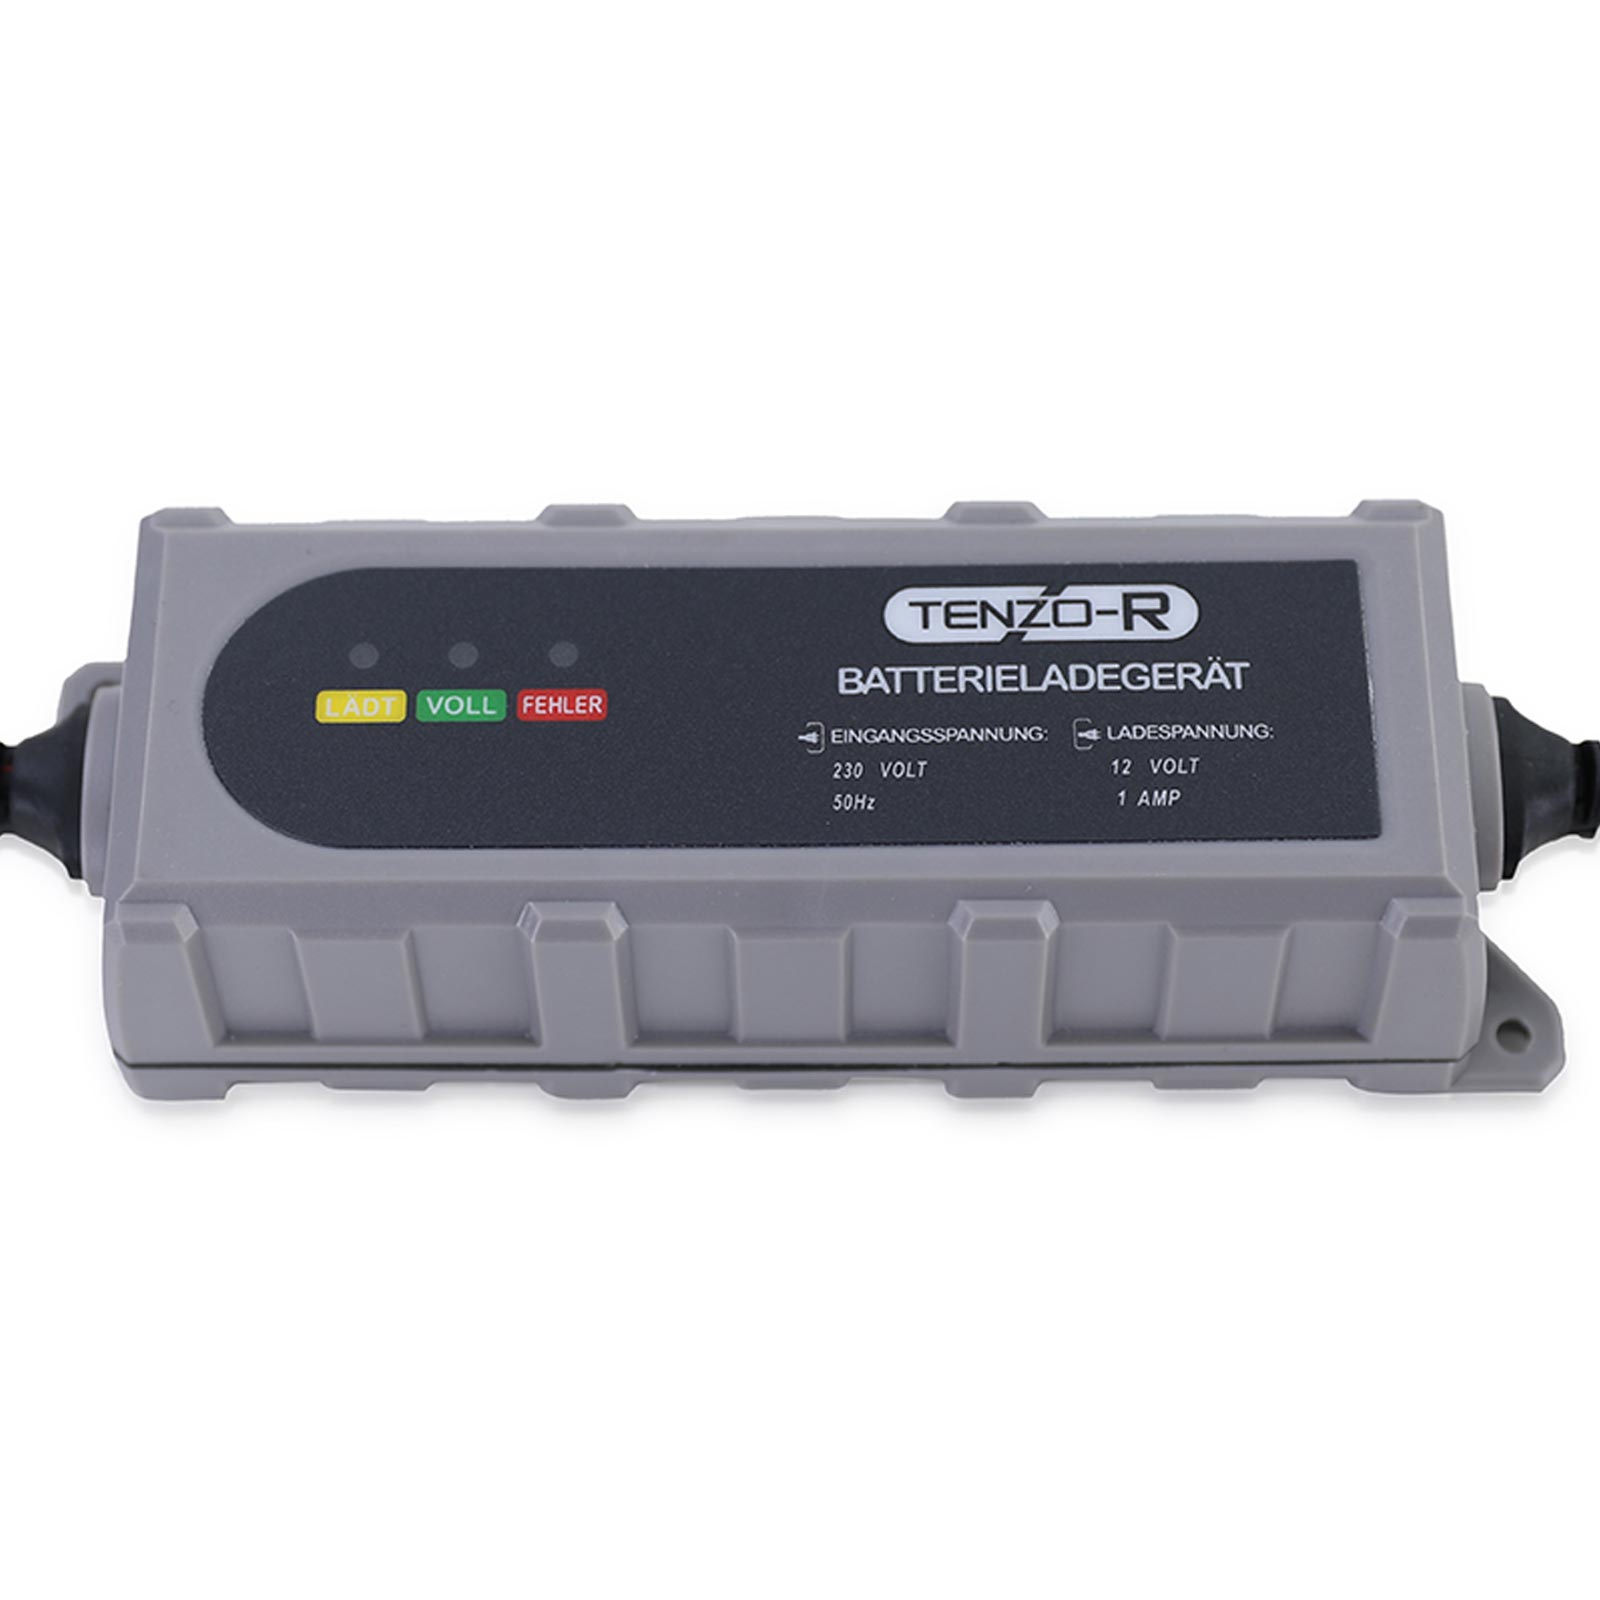 Kfz-Batterieladegerät 12 V - 100 A online kaufen